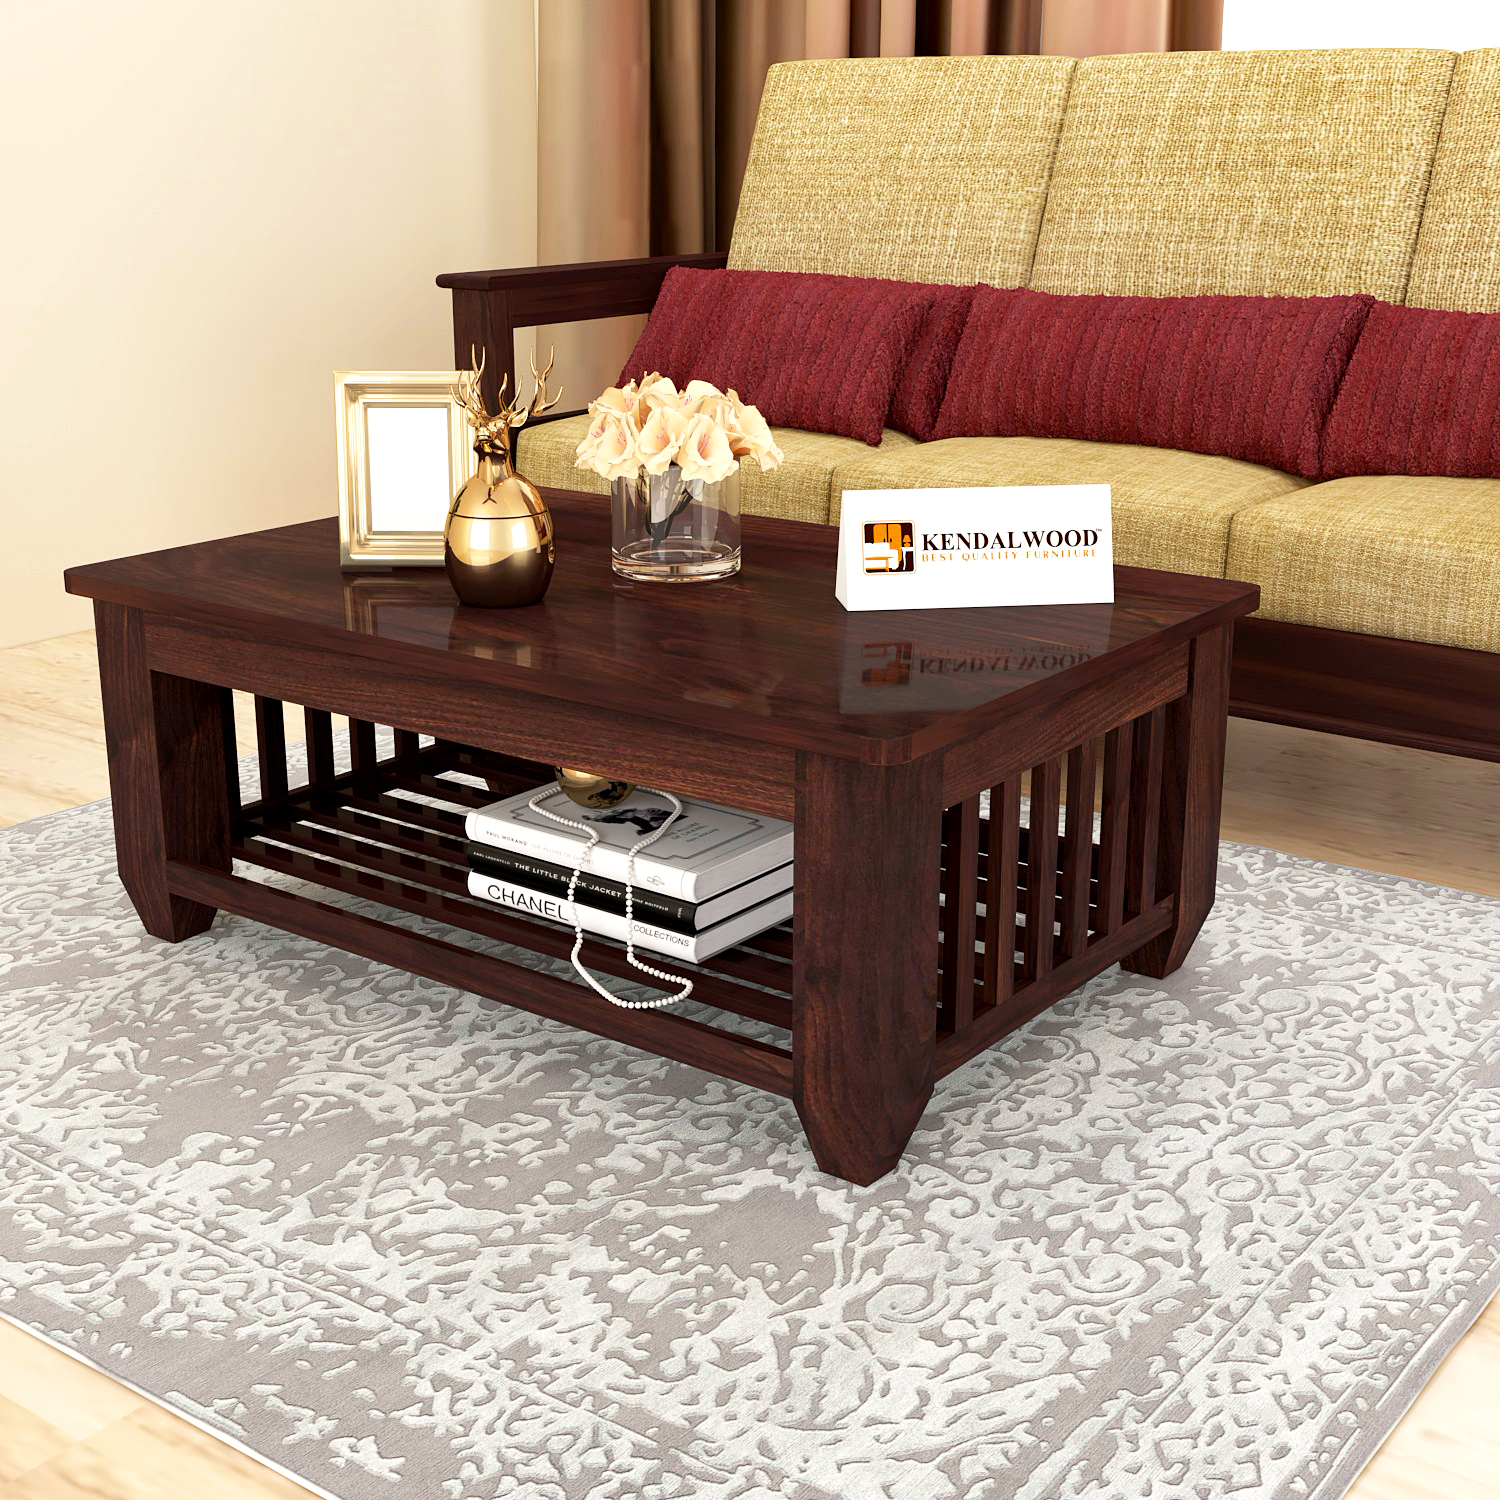 Solenoide estación de televisión población KendalWood™ Furniture Storage Center Table Sofa Center Table Solid Wood  Coffee Table (Finish Color – Walnut Finish) – kendalwood